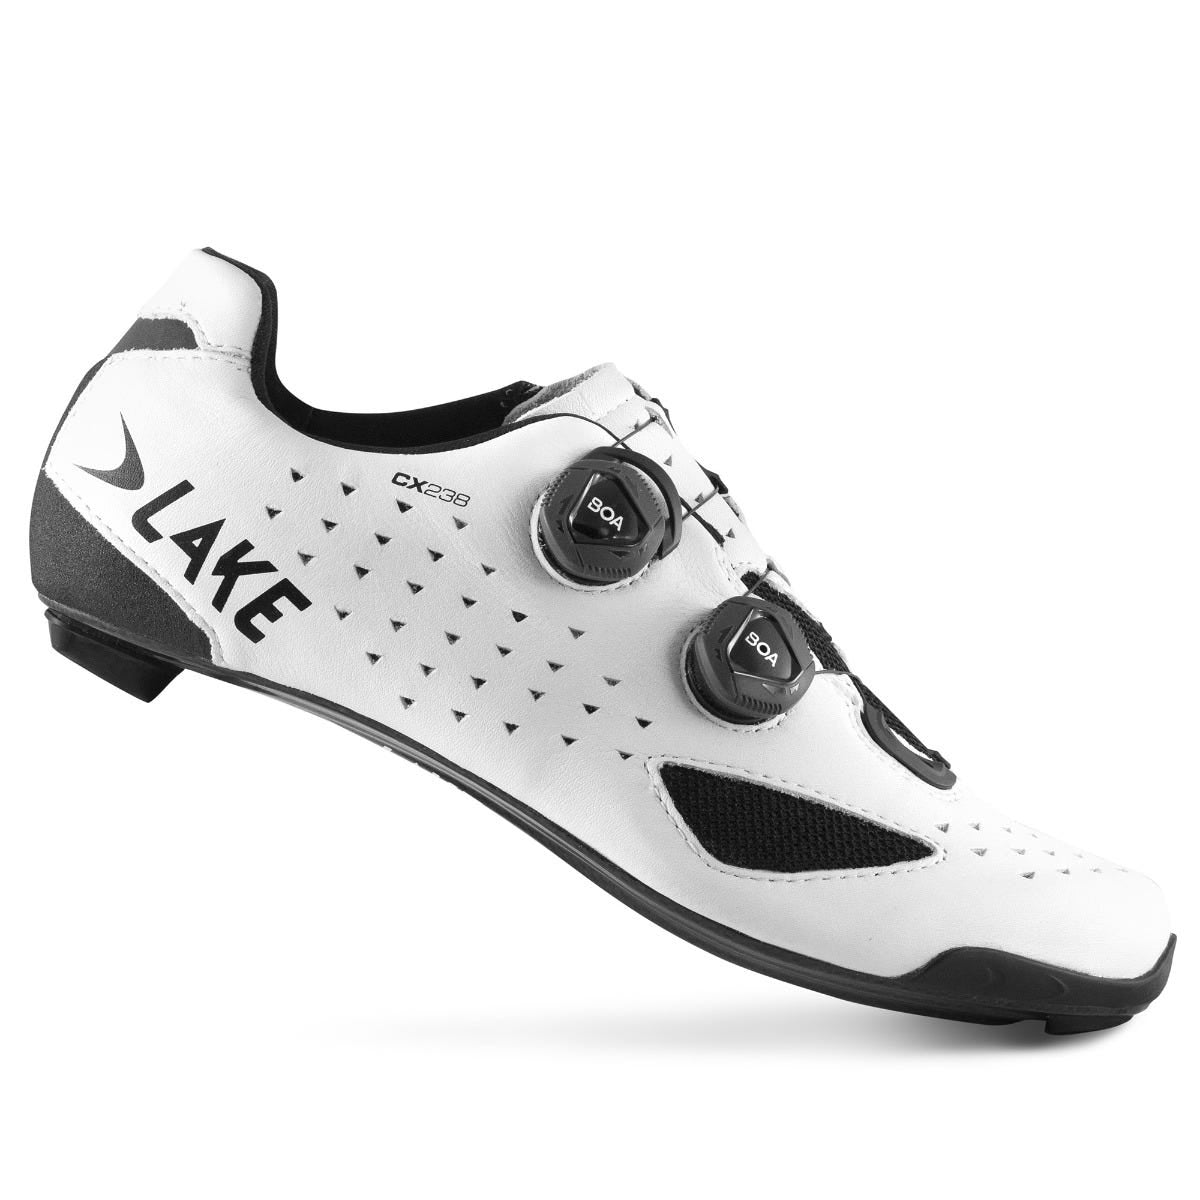 Lake CX238 Carbon Men's SPD Road Cycling Shoes White - EU 43